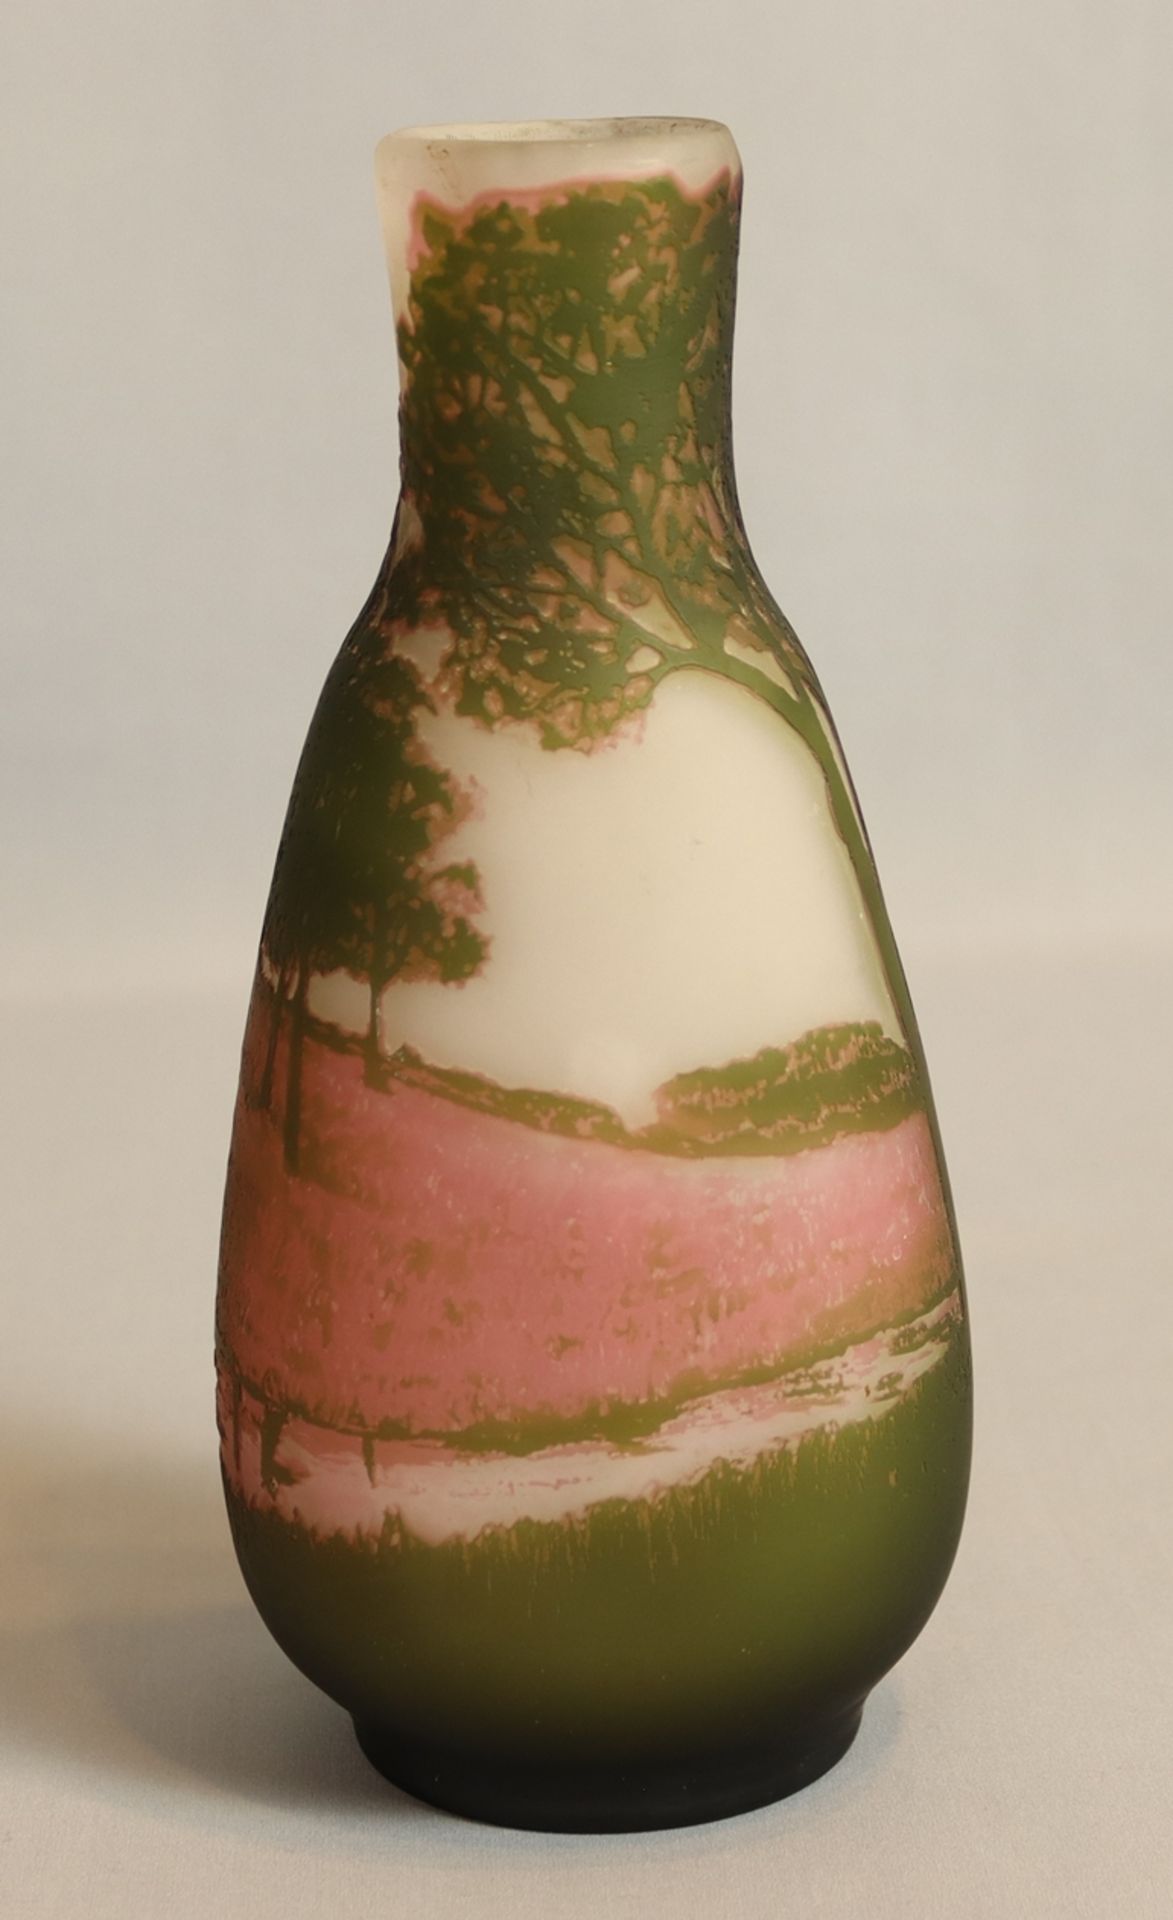 Jugendstil Vase 20.Jh., farbloses Glas mit zahlreichen farblichen Überfängen, milchfarbener Untergr - Image 2 of 3